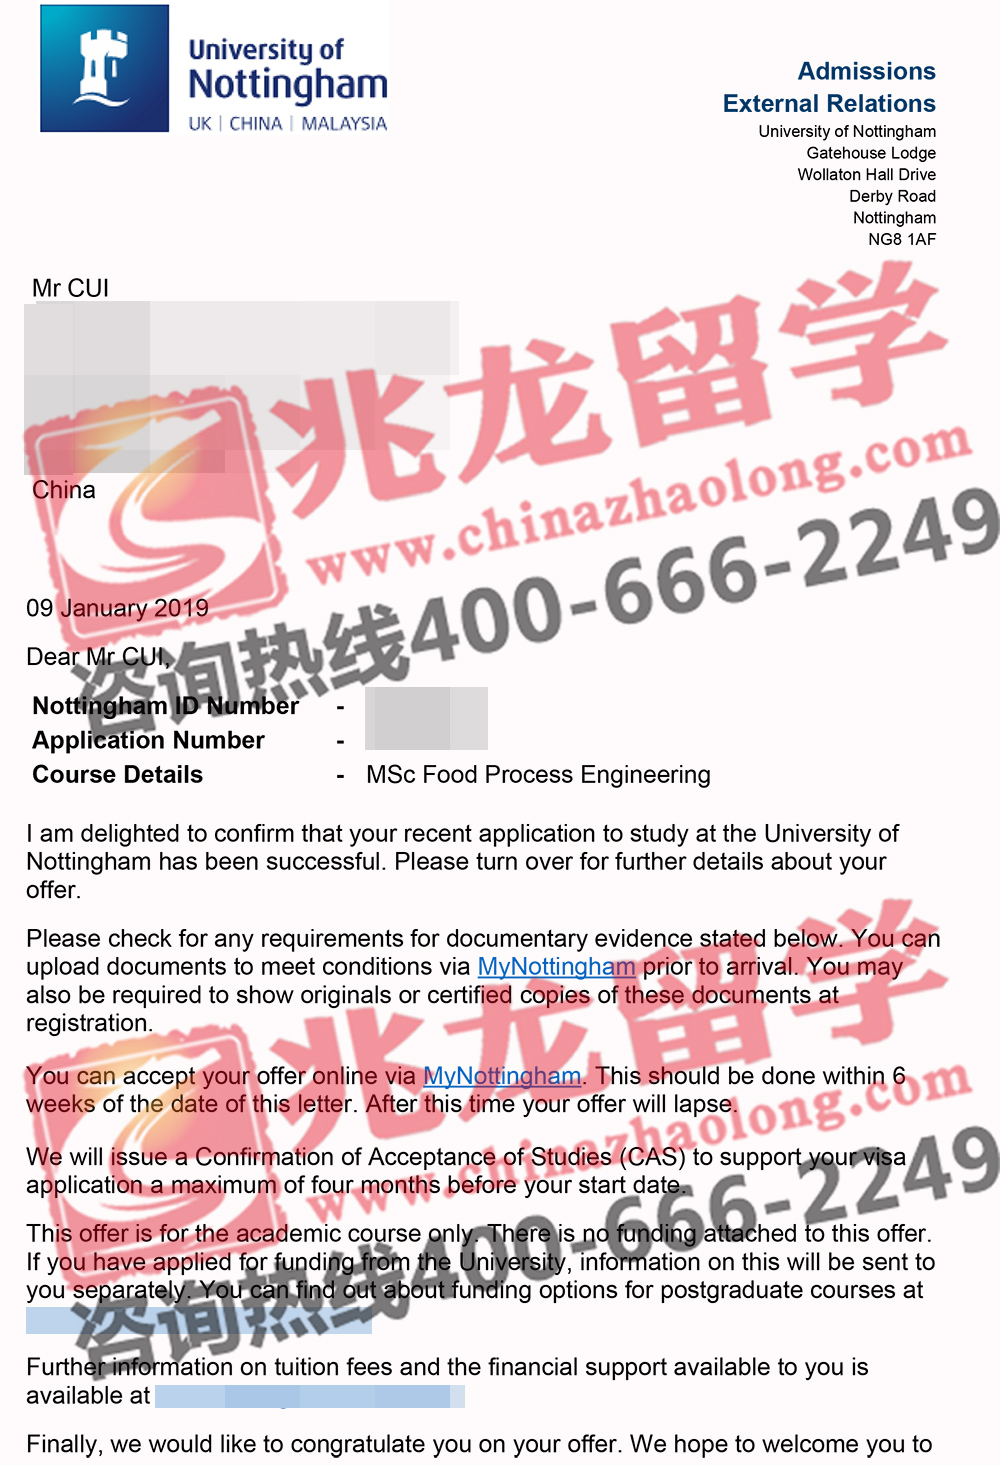 崔mingyang-诺丁汉-食品加工工程硕士专业-条件offer-兆龙留学.jpg